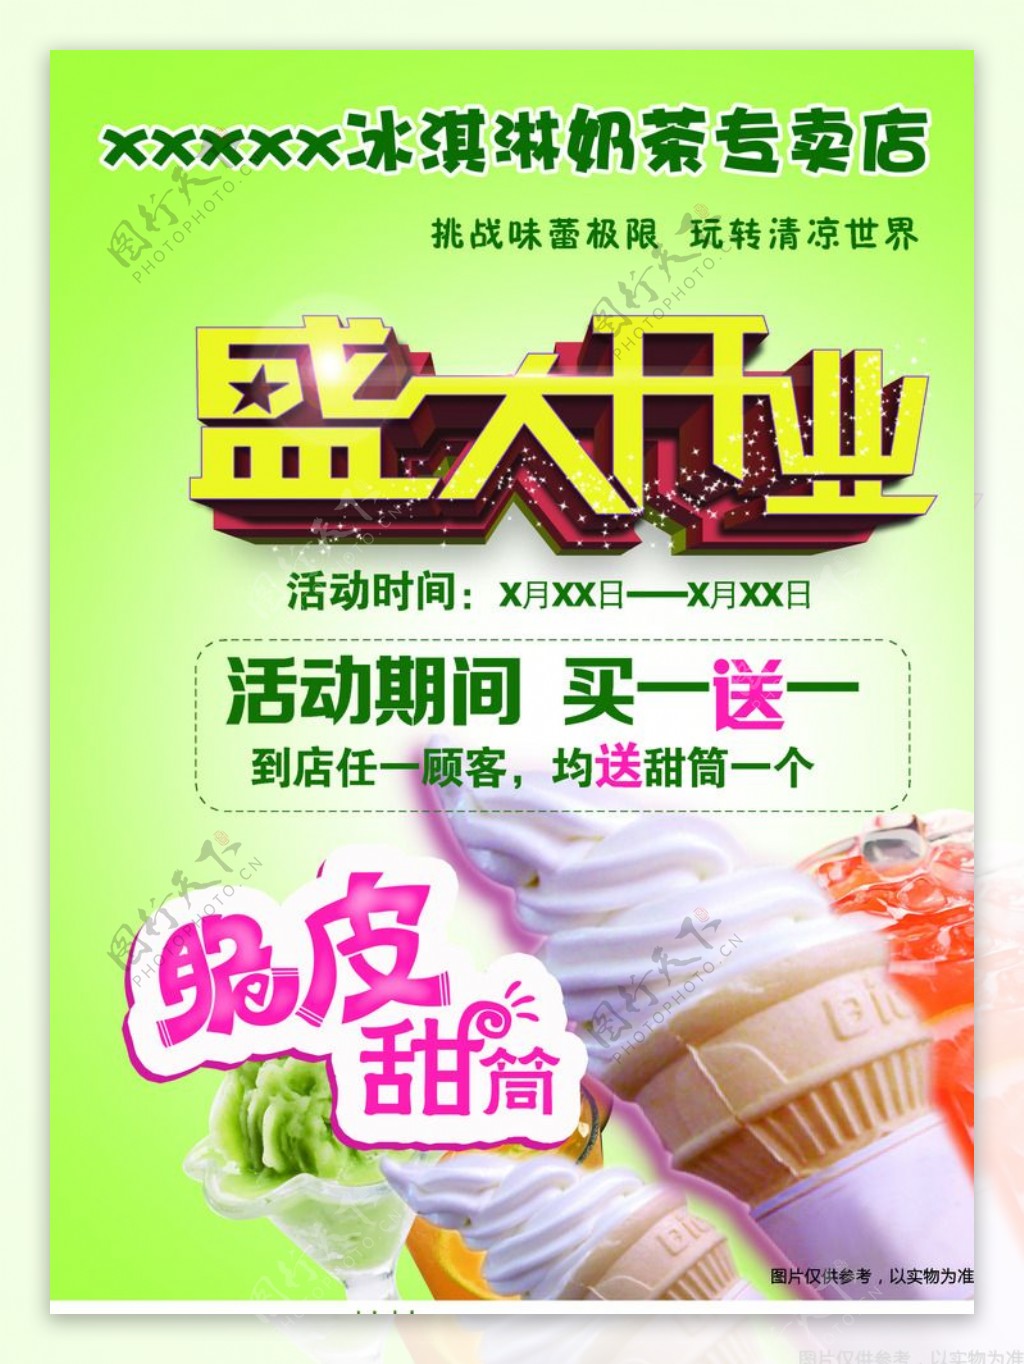 冰淇淋开业海报